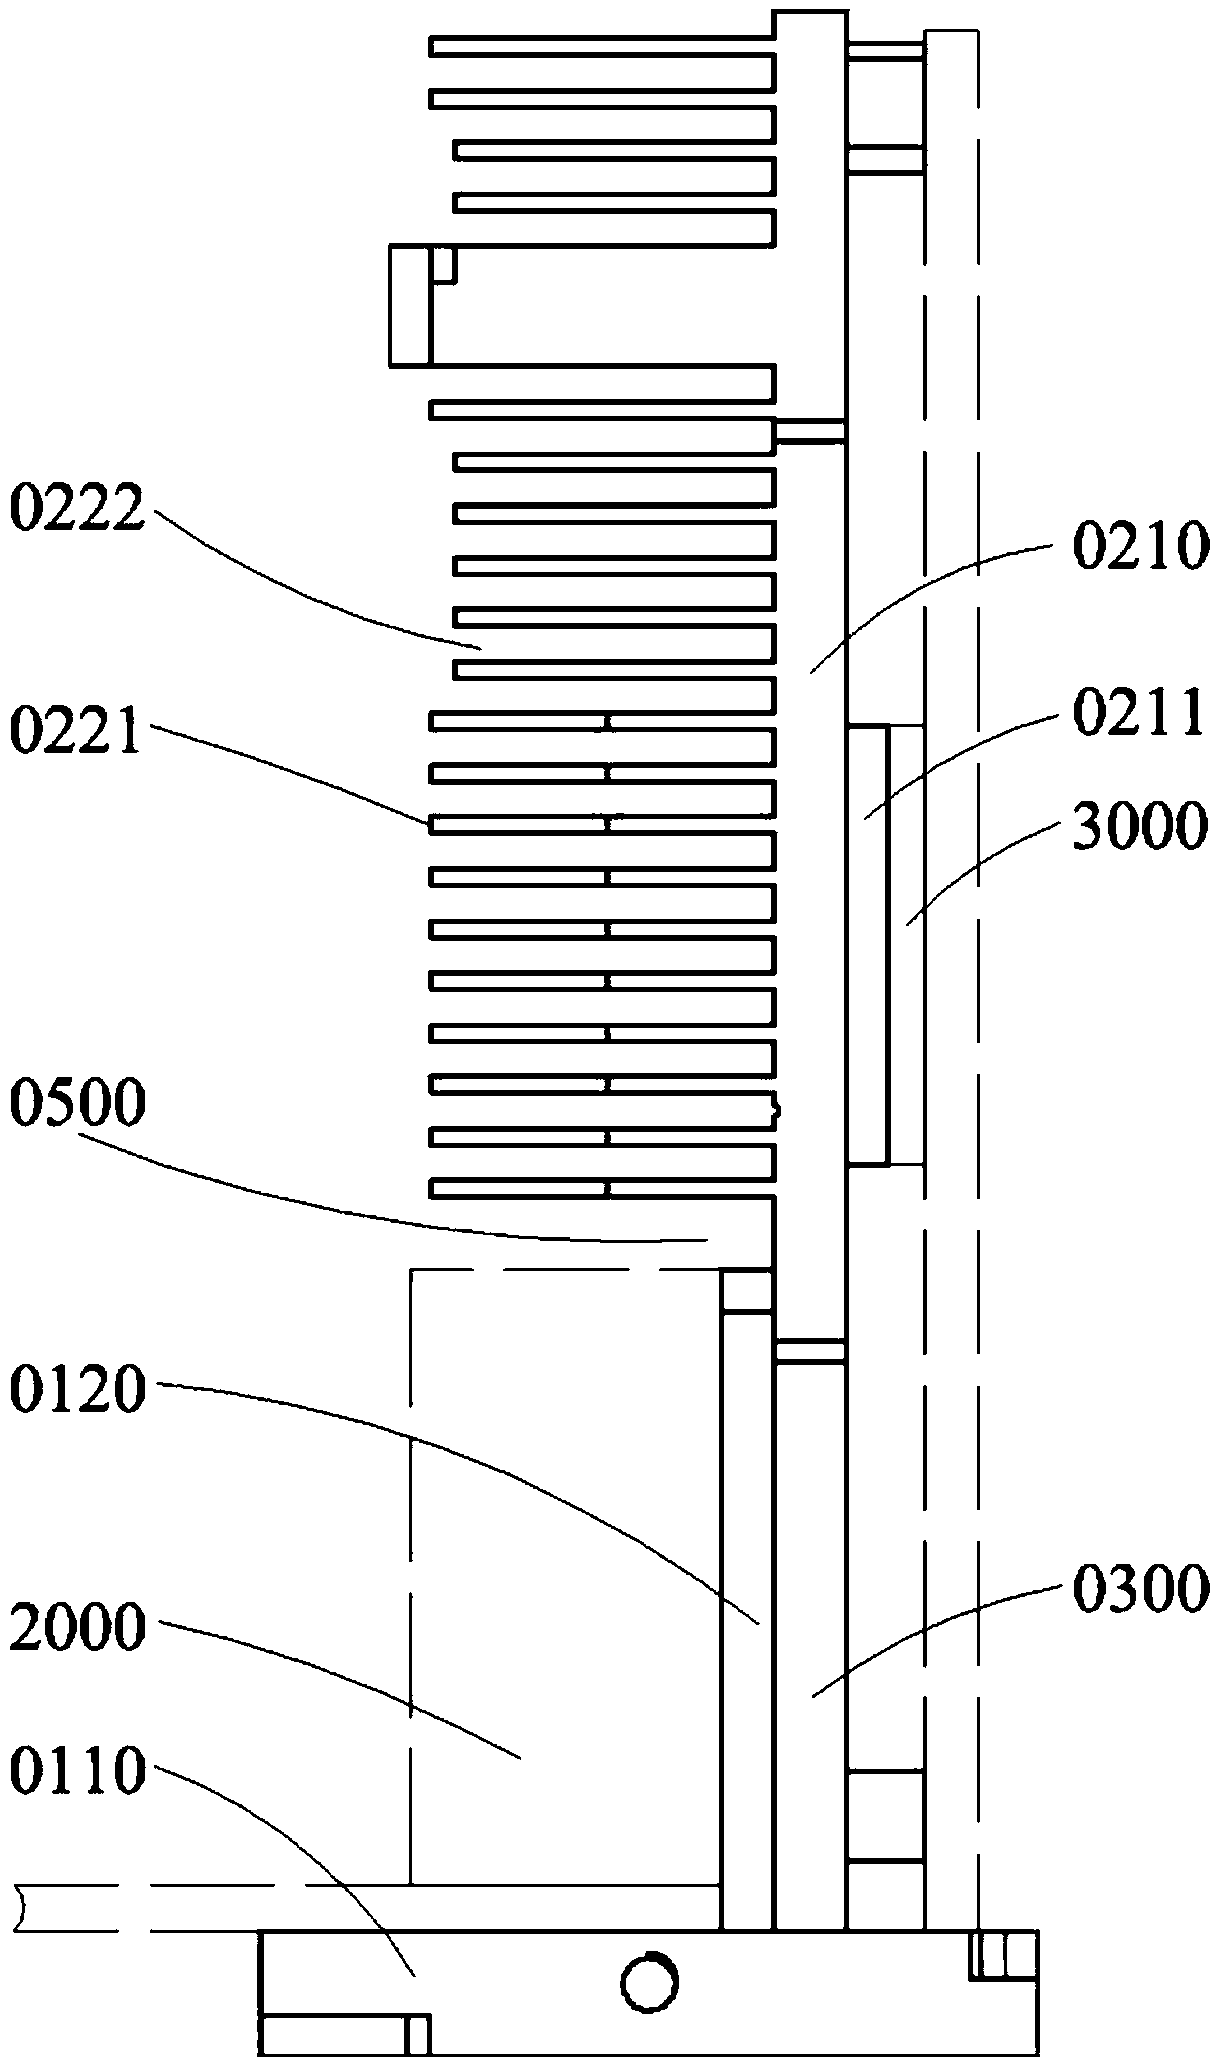 Integrated radiator having temperature gradient